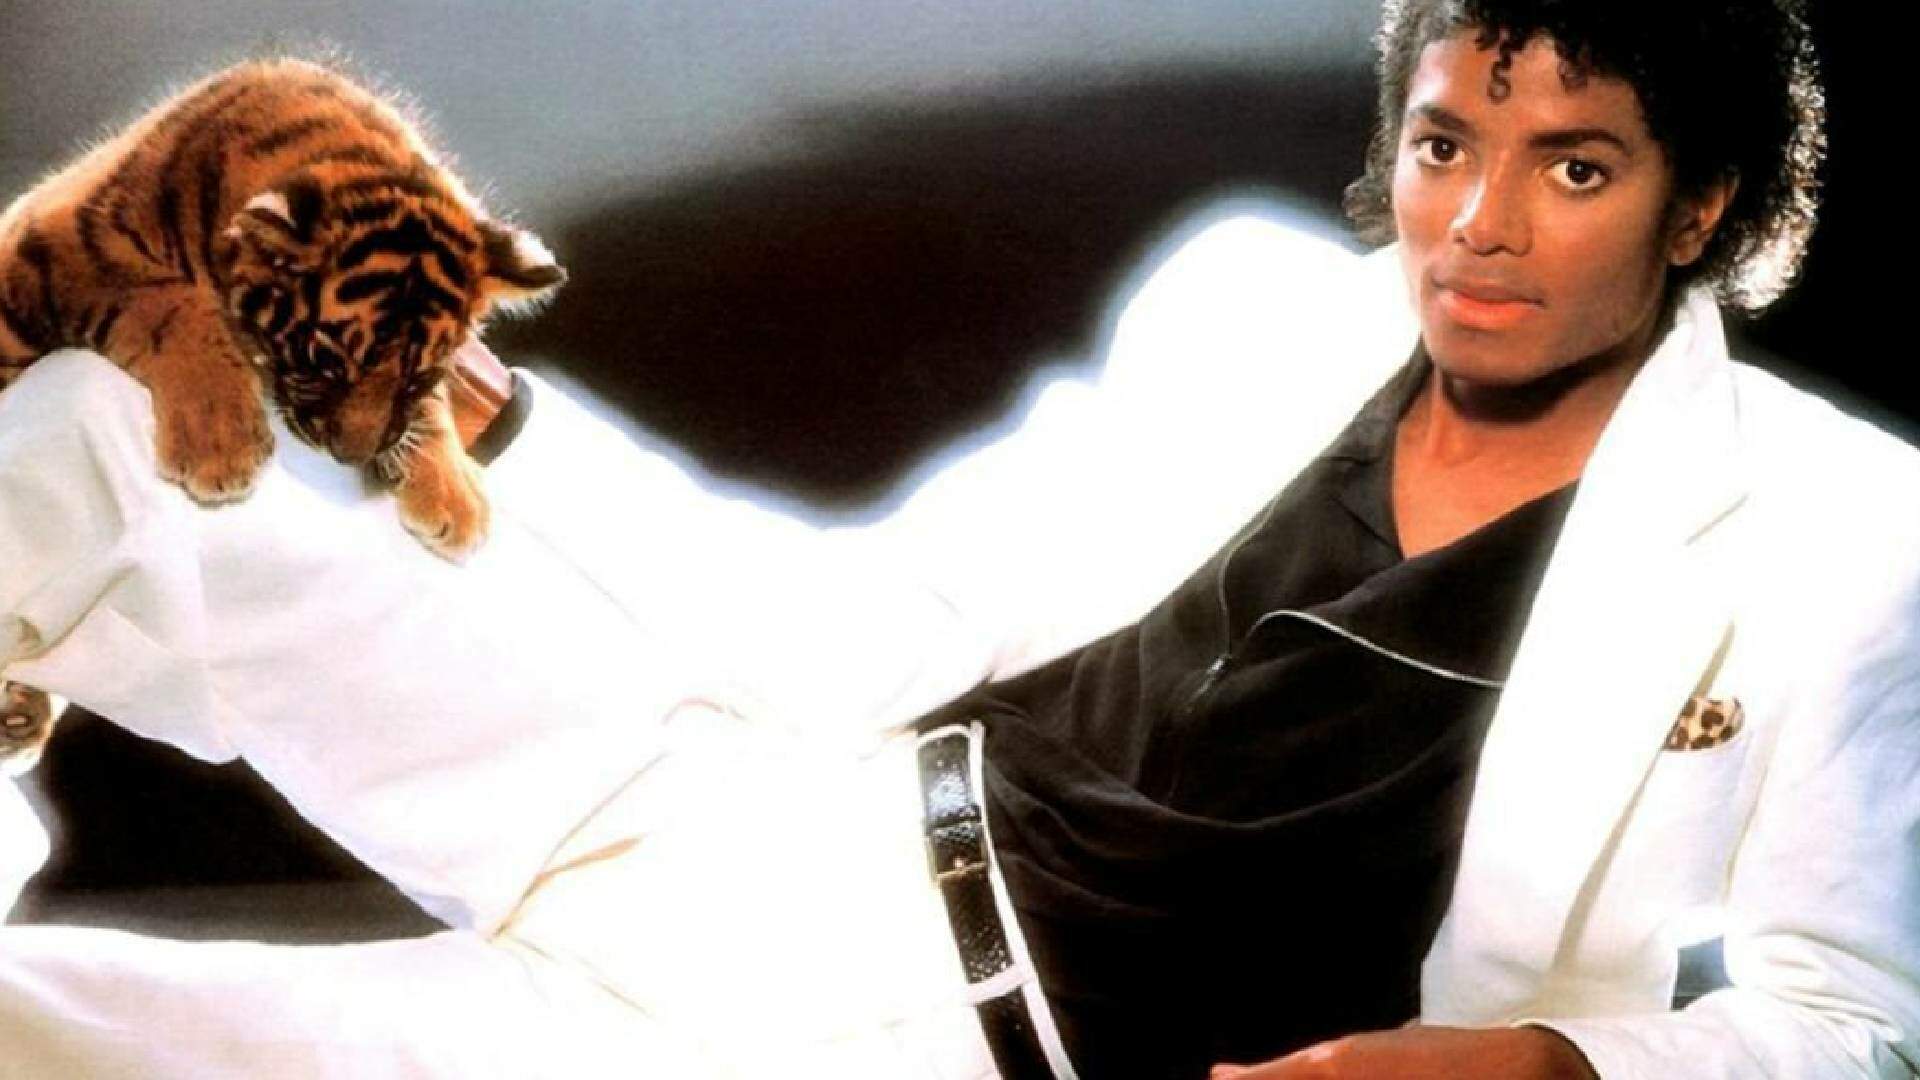 Com “Billie Jean” e outros grandes sucessos de Michael Jackson, álbum “Thriller” completa 40 anos - Metropolitana FM